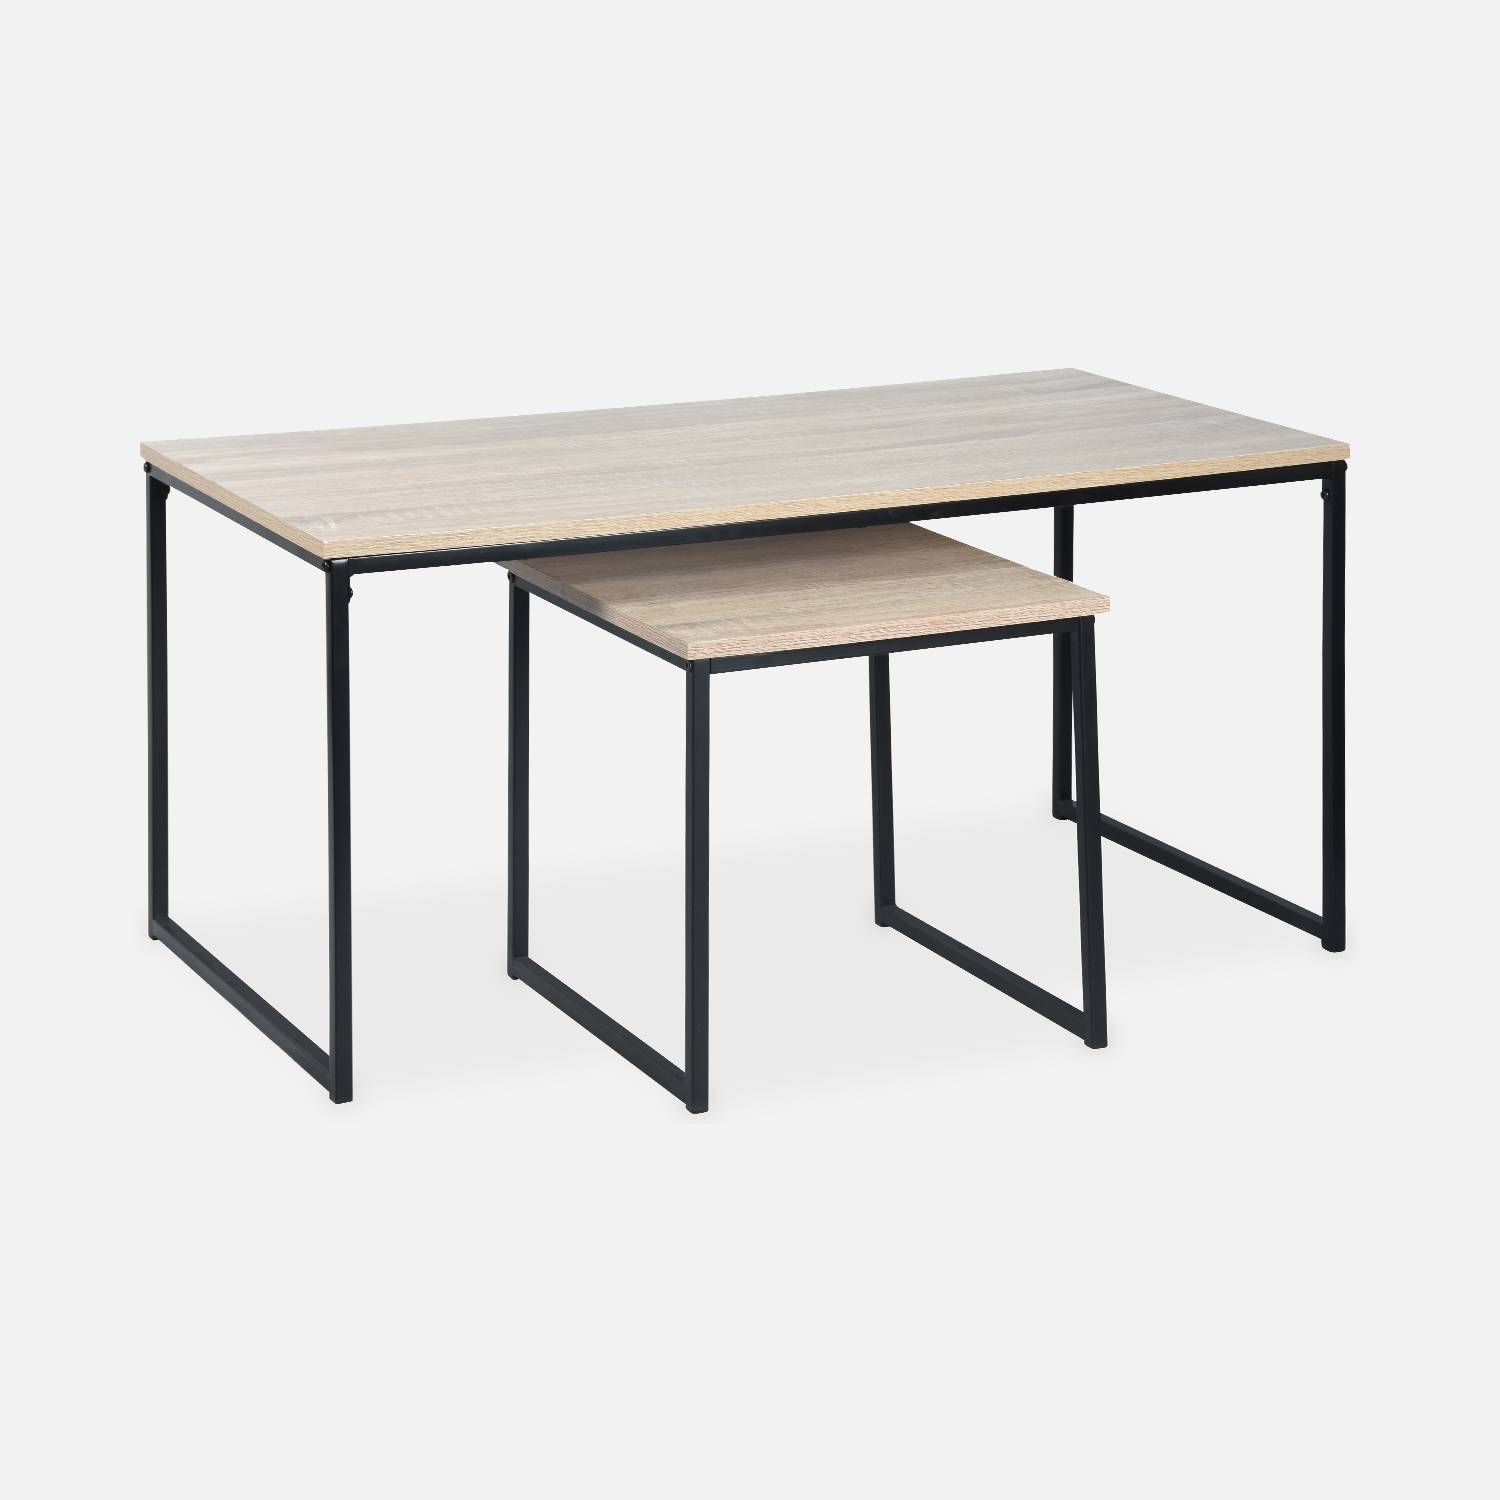  Tavolini da caffè in metallo e legno - Loft - Tavoli nidificanti, 100x48x48cm e 40x40x40cm Photo3